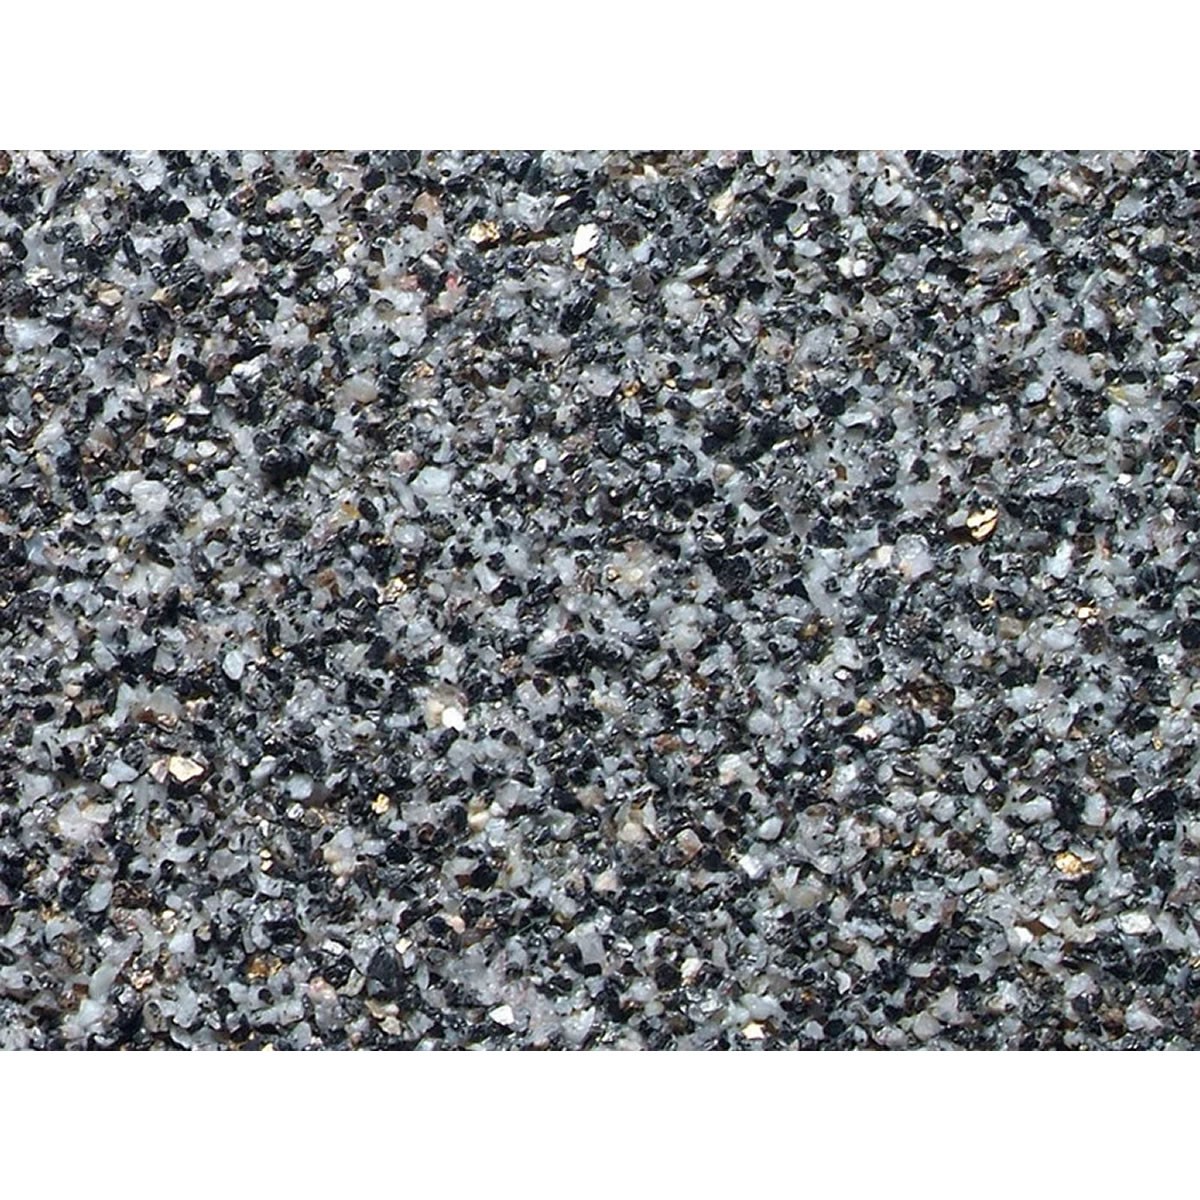 NOCH PROFI Ballast Granite grey Σκυρόστρωμα Γκρι Γρανίτη